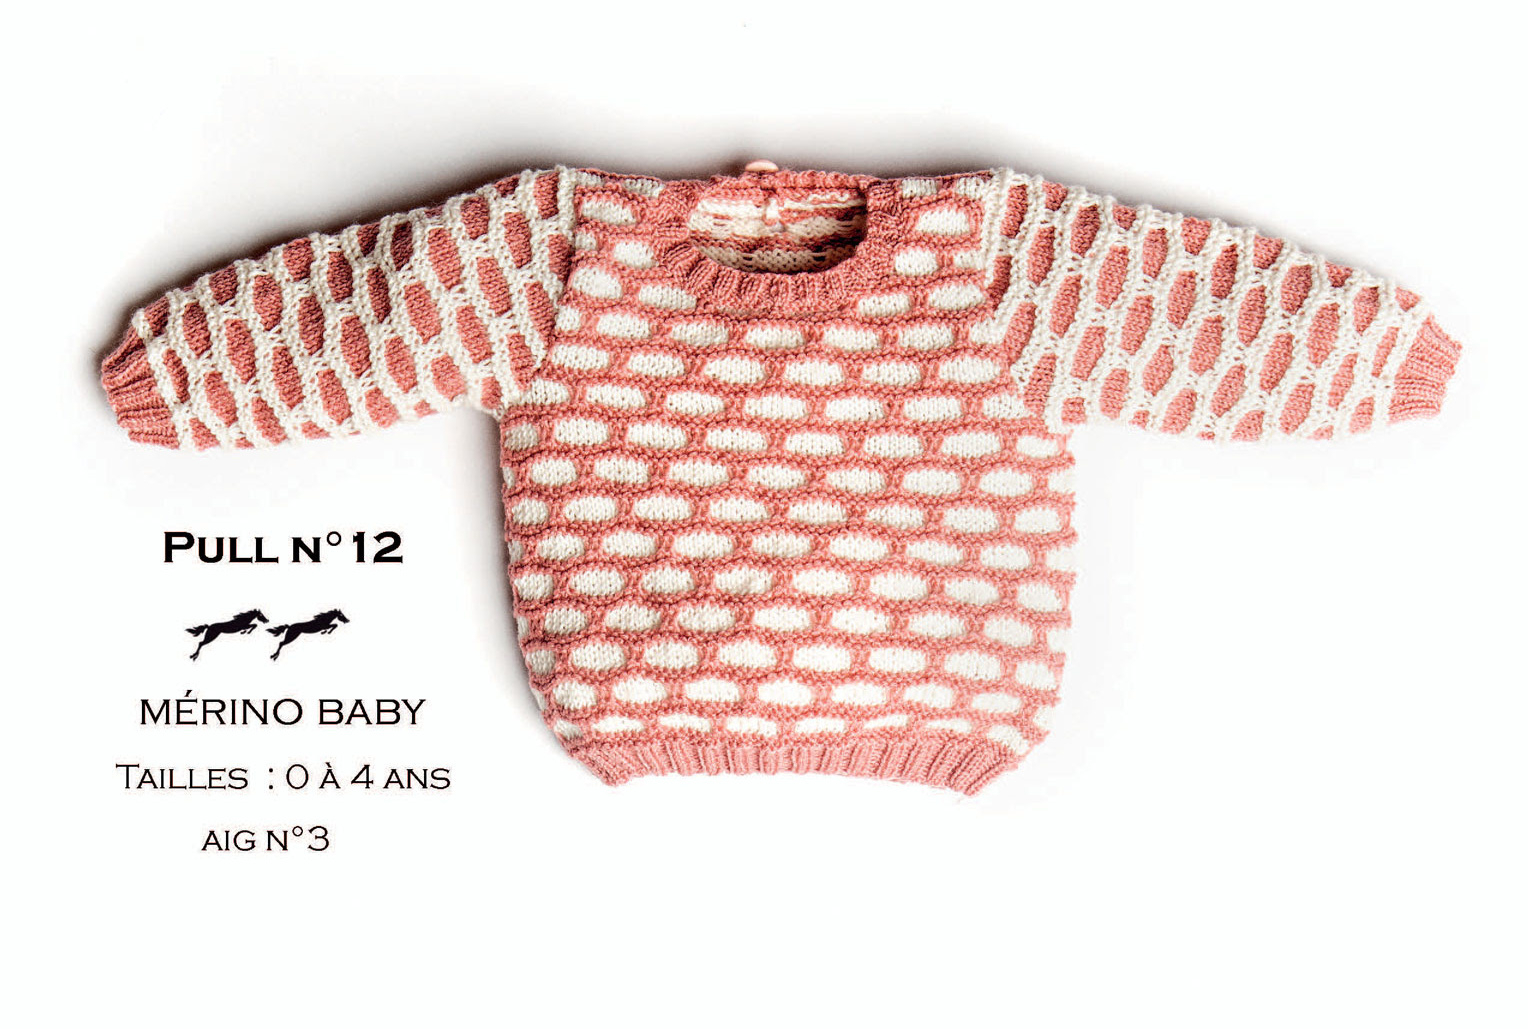 Tricot bébé, tricot layette, laines layette - Laines Cheval Blanc